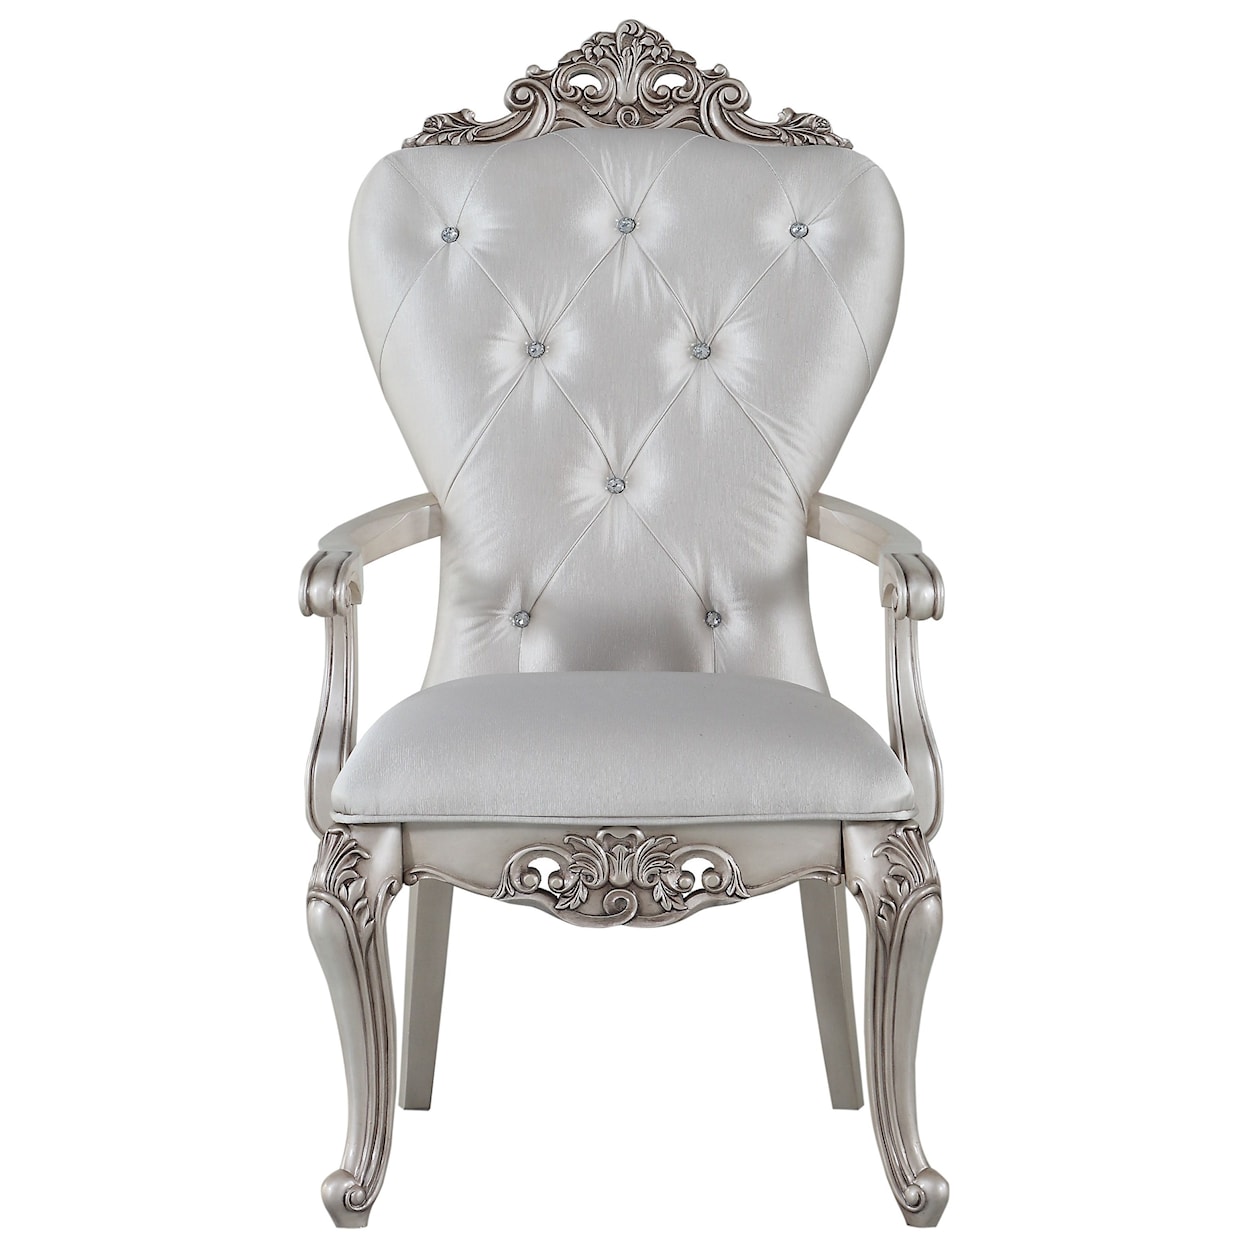 Acme Furniture Gorsedd Arm Chair